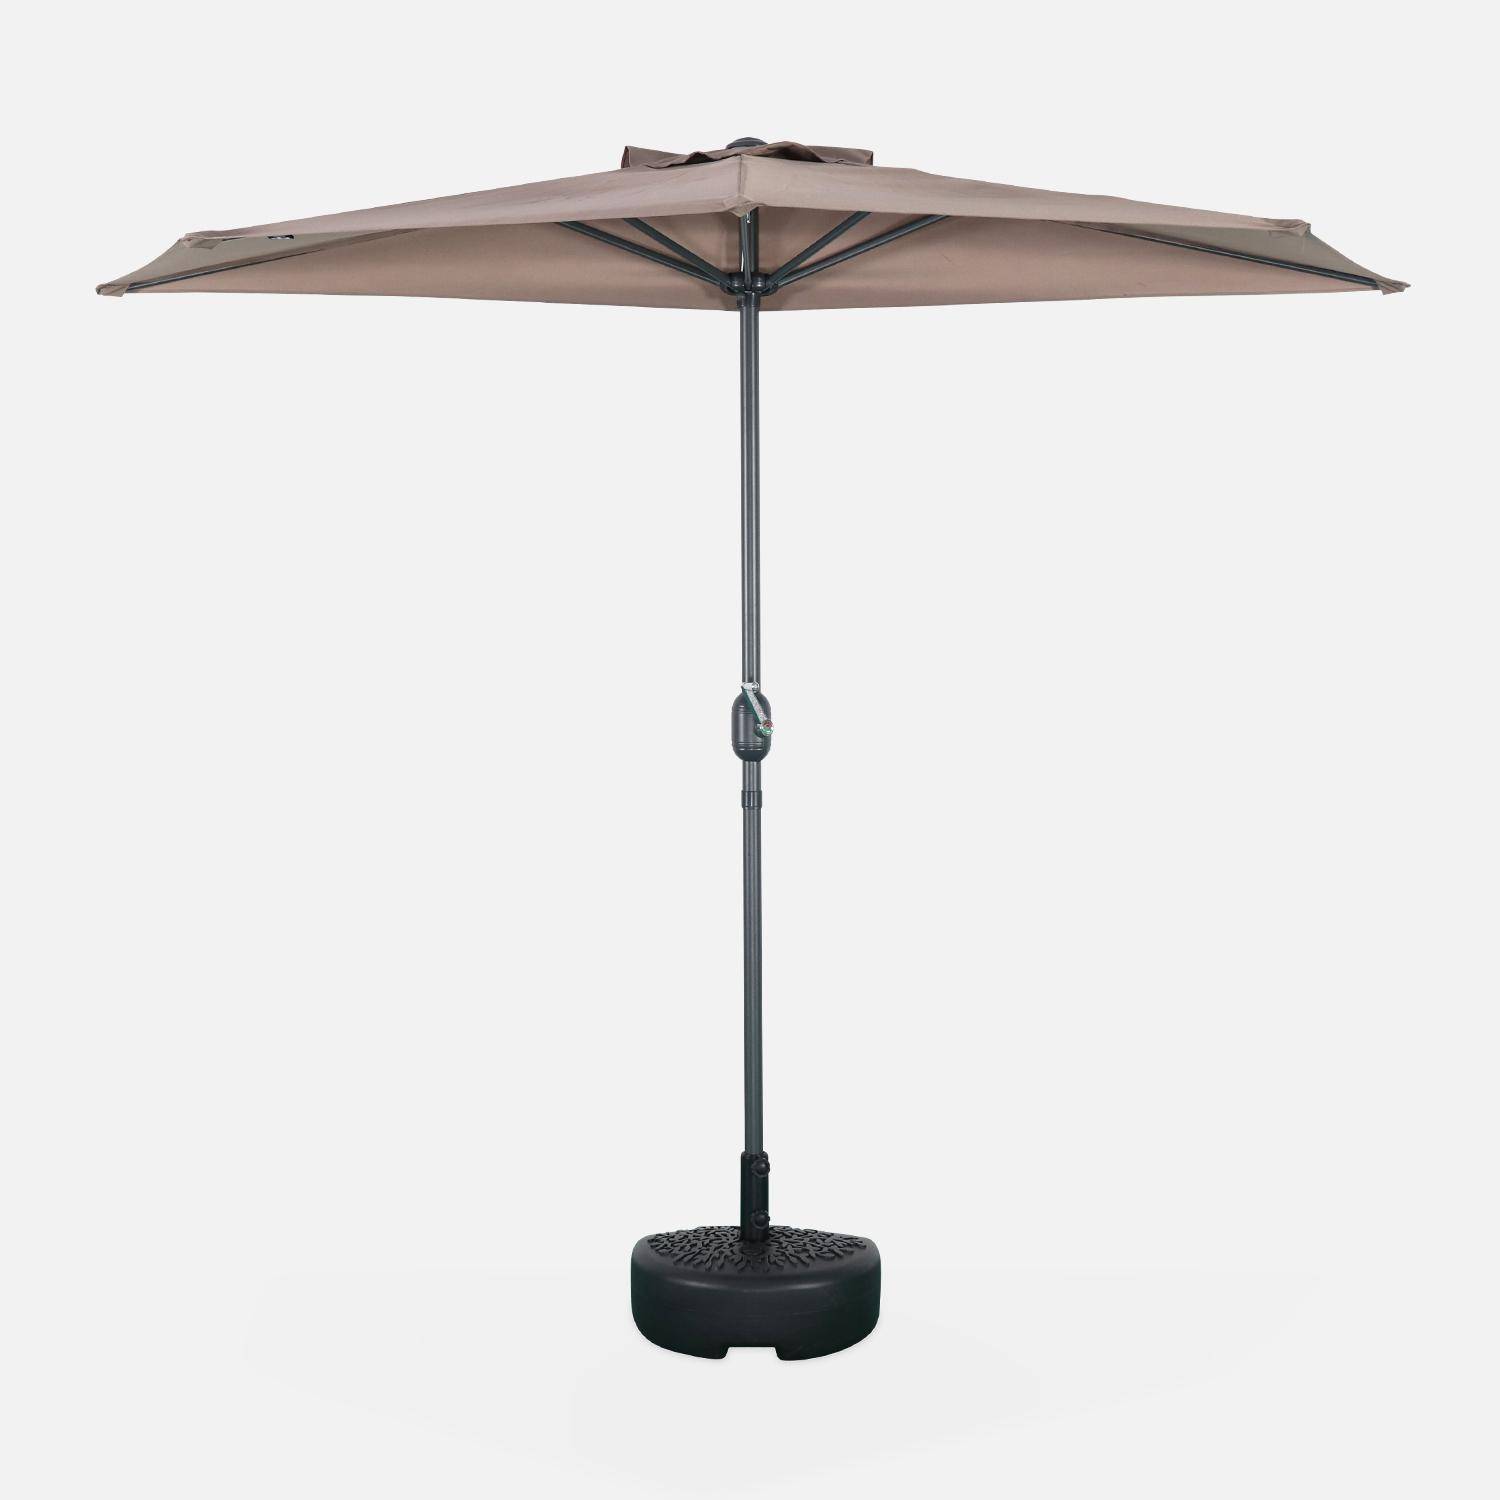  Parasol para balcón Ø250cm  – CALVI – Pequeño parasol recto, mástil en aluminio con manivela, tela color pardo ,sweeek,Photo3